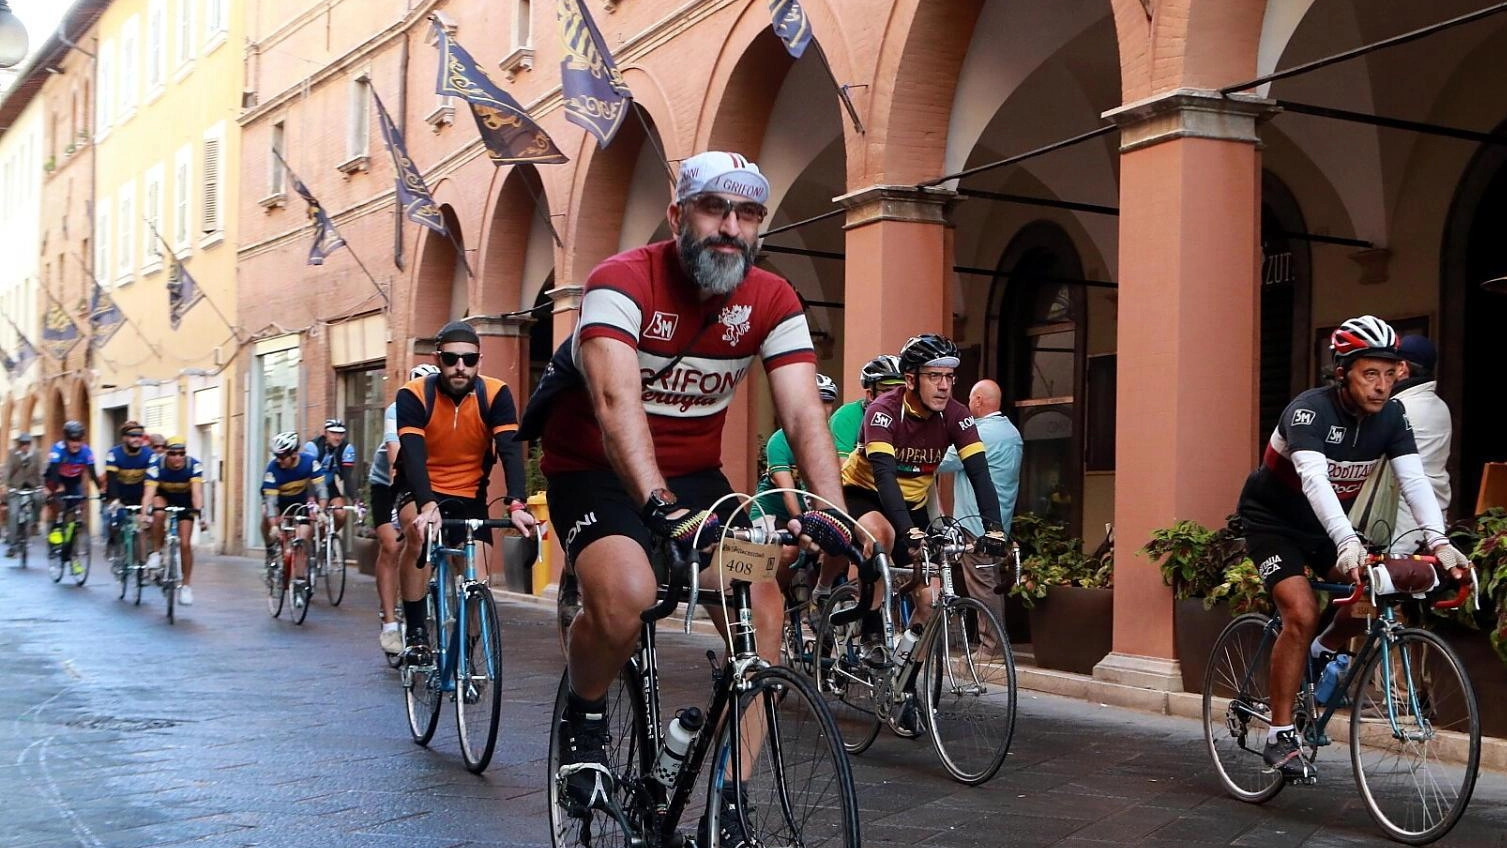 

Torna l’appuntamento con “La Francescana” a Foligno: cicloturistica e iniziative